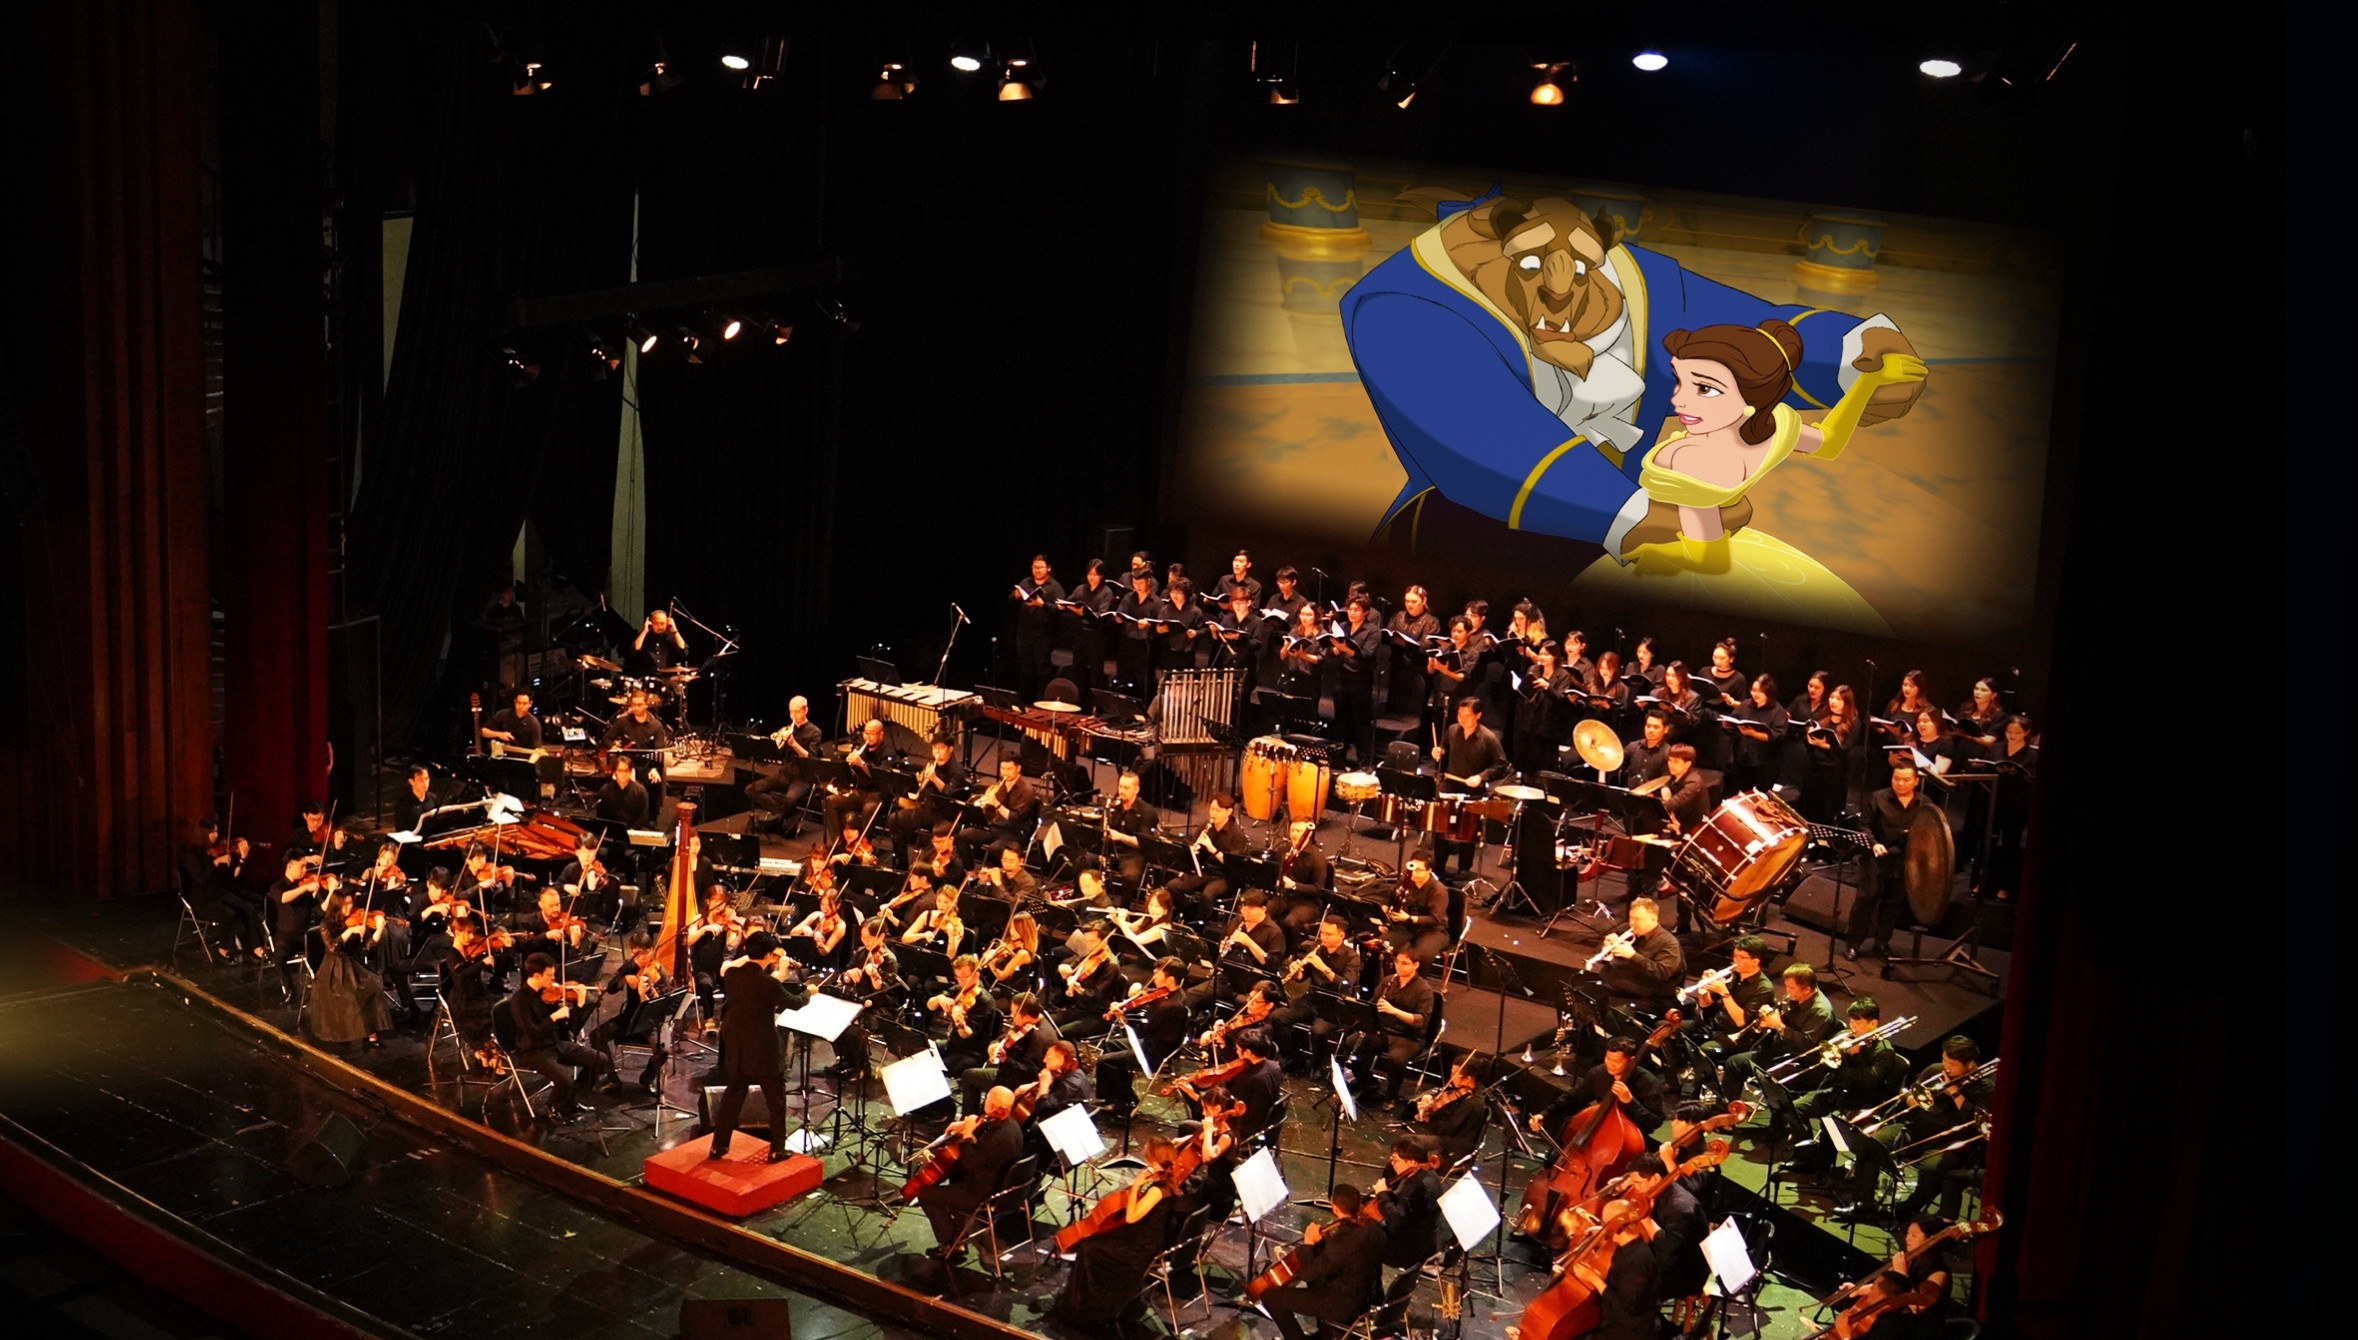 TPHCM lần đầu tiên diễn ra buổi hòa nhạc độc bản từ tác phẩm kinh điển của Disney - "Người Đẹp và Quái Thú"